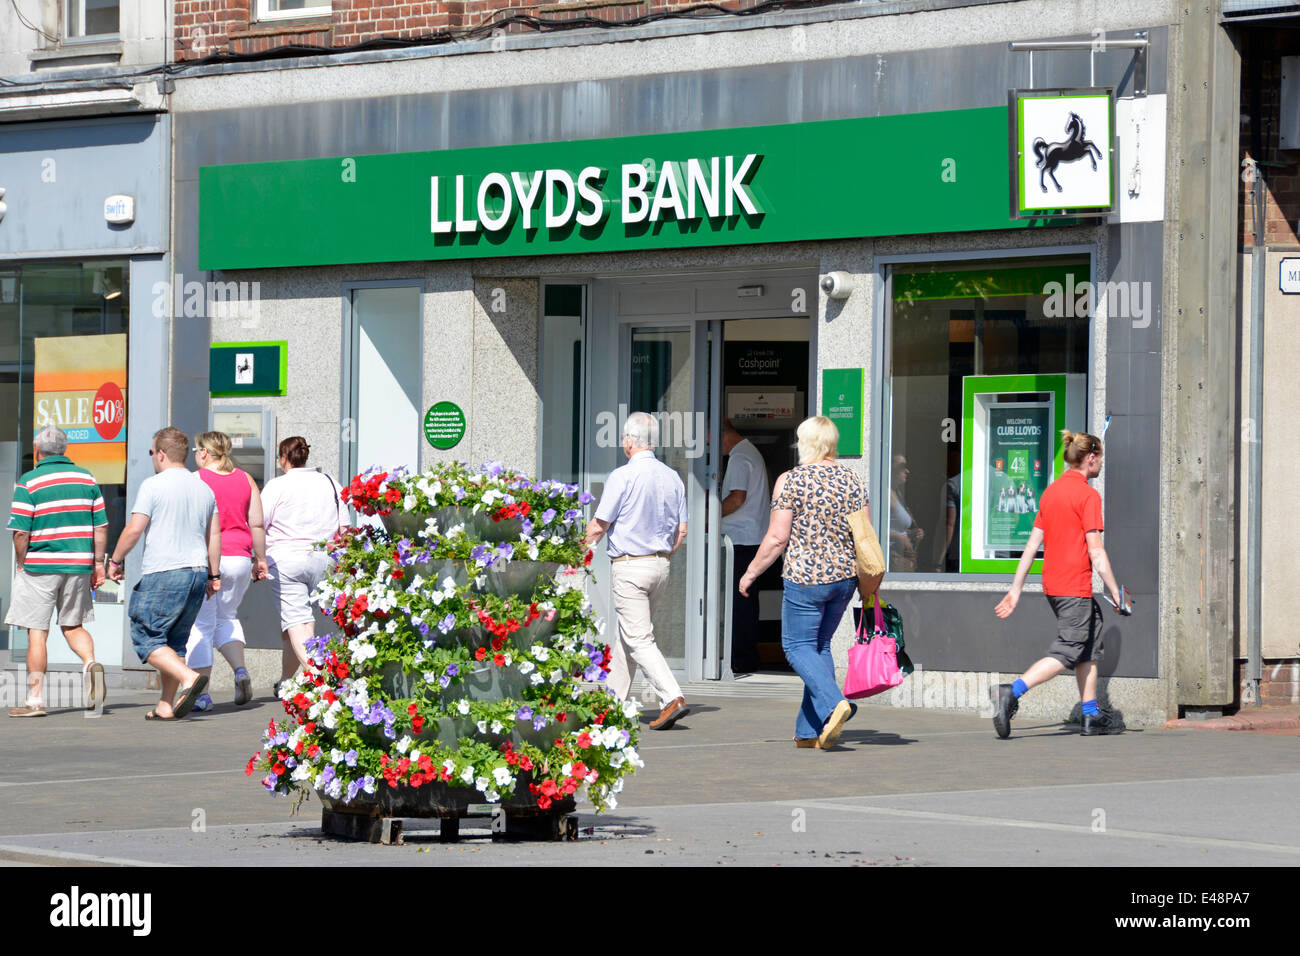 Lloyds Bank High Street Brentwood Essex England UK Branch Pflaster Blütenpracht & Wand-Plakette für Welten zuerst auf Linie Echtzeit Geldautomaten Stockfoto